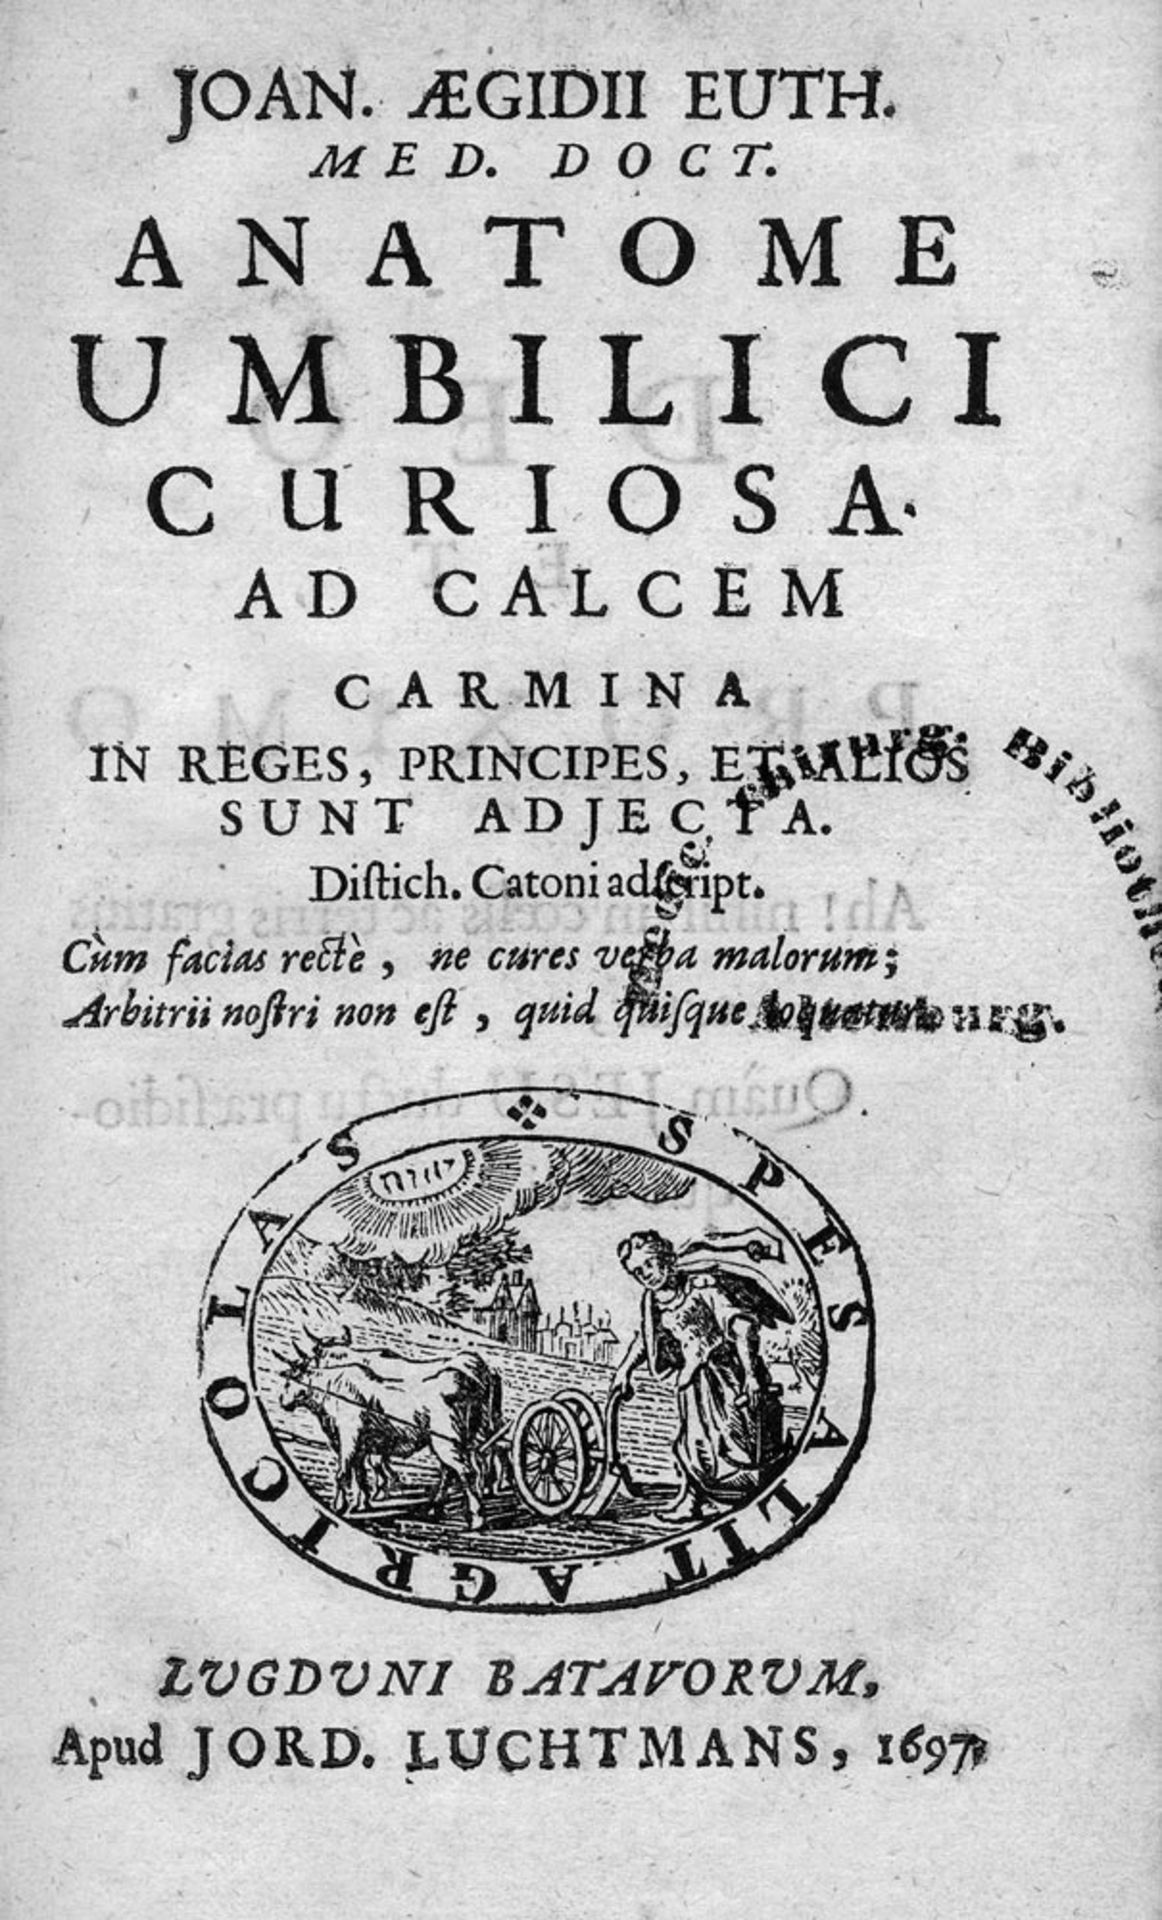 Euth, Johannes Aegidius: Anatome umbilici curiosa